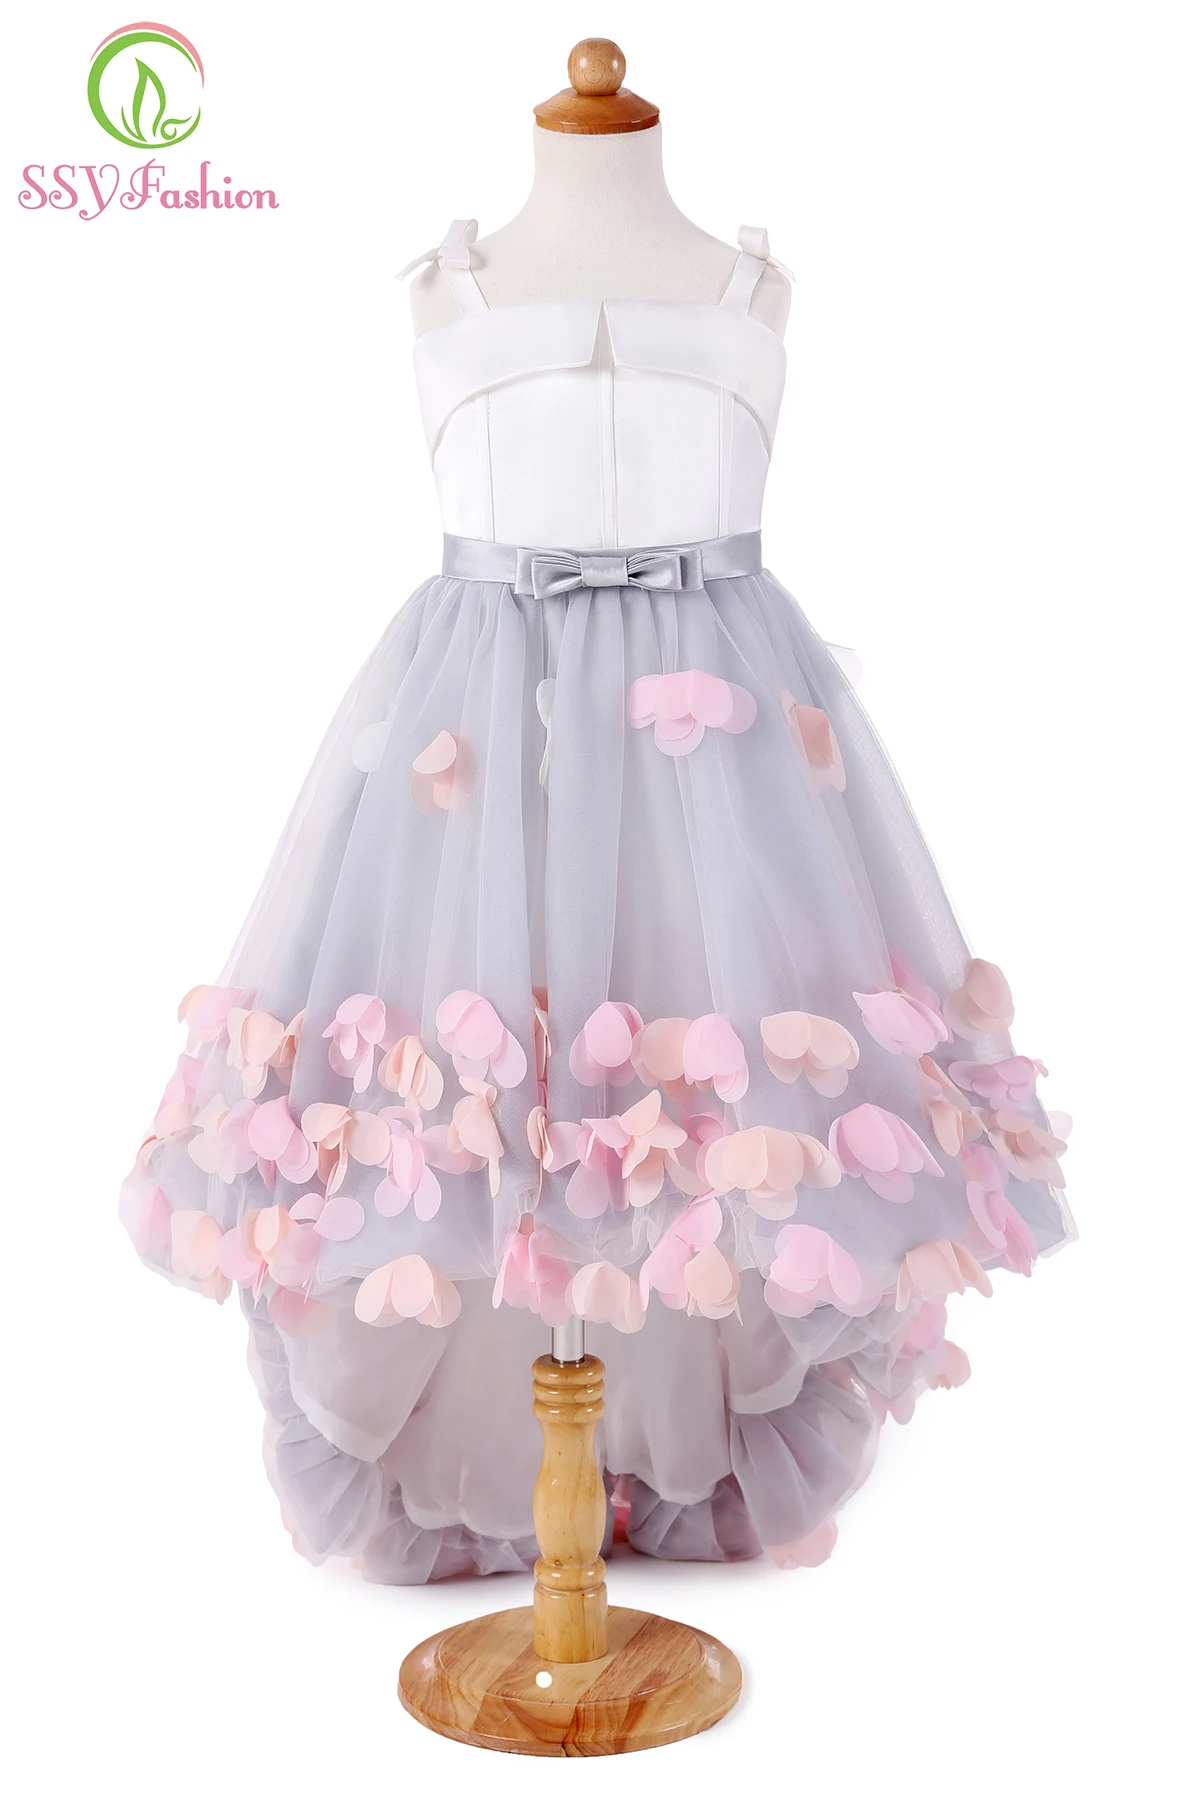 SSYFashion/новые милые Свадебные Платья с цветочным узором для девочек, короткие спереди и Длинные Сзади атласные вечерние платья с тюлевой аппликацией на бретельках Bll - Цвет: grey